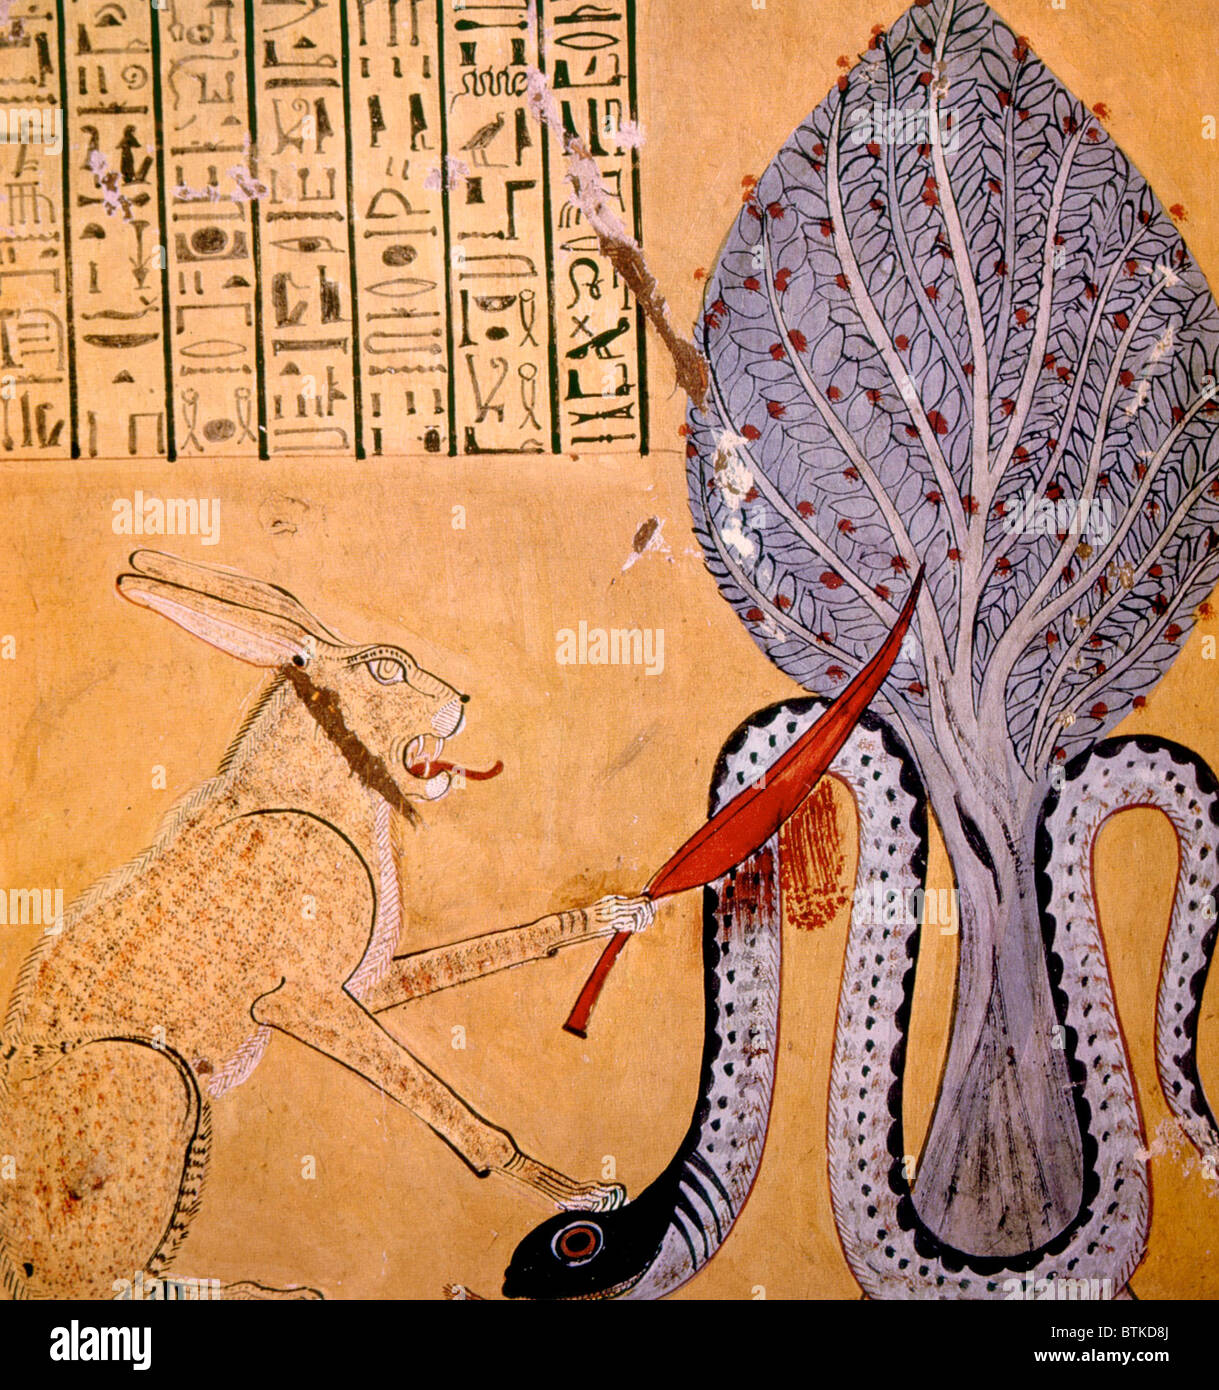 Gemälde einer Kaninchen-Schmuckschildkröte Katze verbunden mit dem Sonnengott Ra, die Tötung der Schlangengott der Unterwelt Apophis, aus dem Grab des Inherkhaul, XX Dynastie, Ägypten Stockfoto